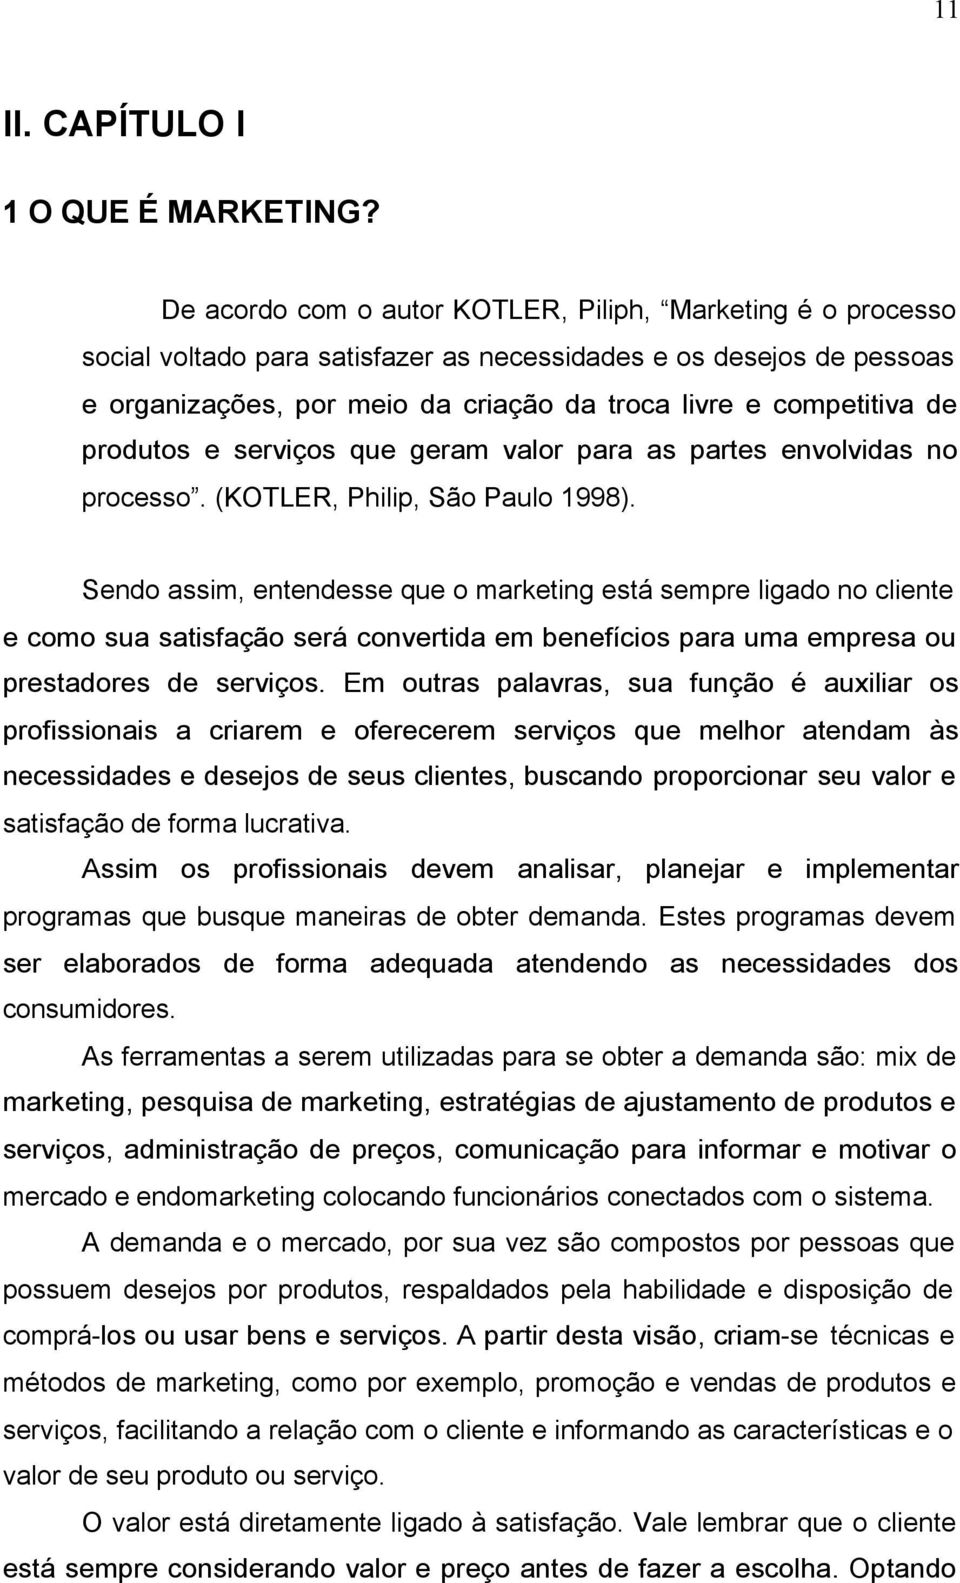 produtos e serviços que geram valor para as partes envolvidas no processo. (KOTLER, Philip, São Paulo 1998).